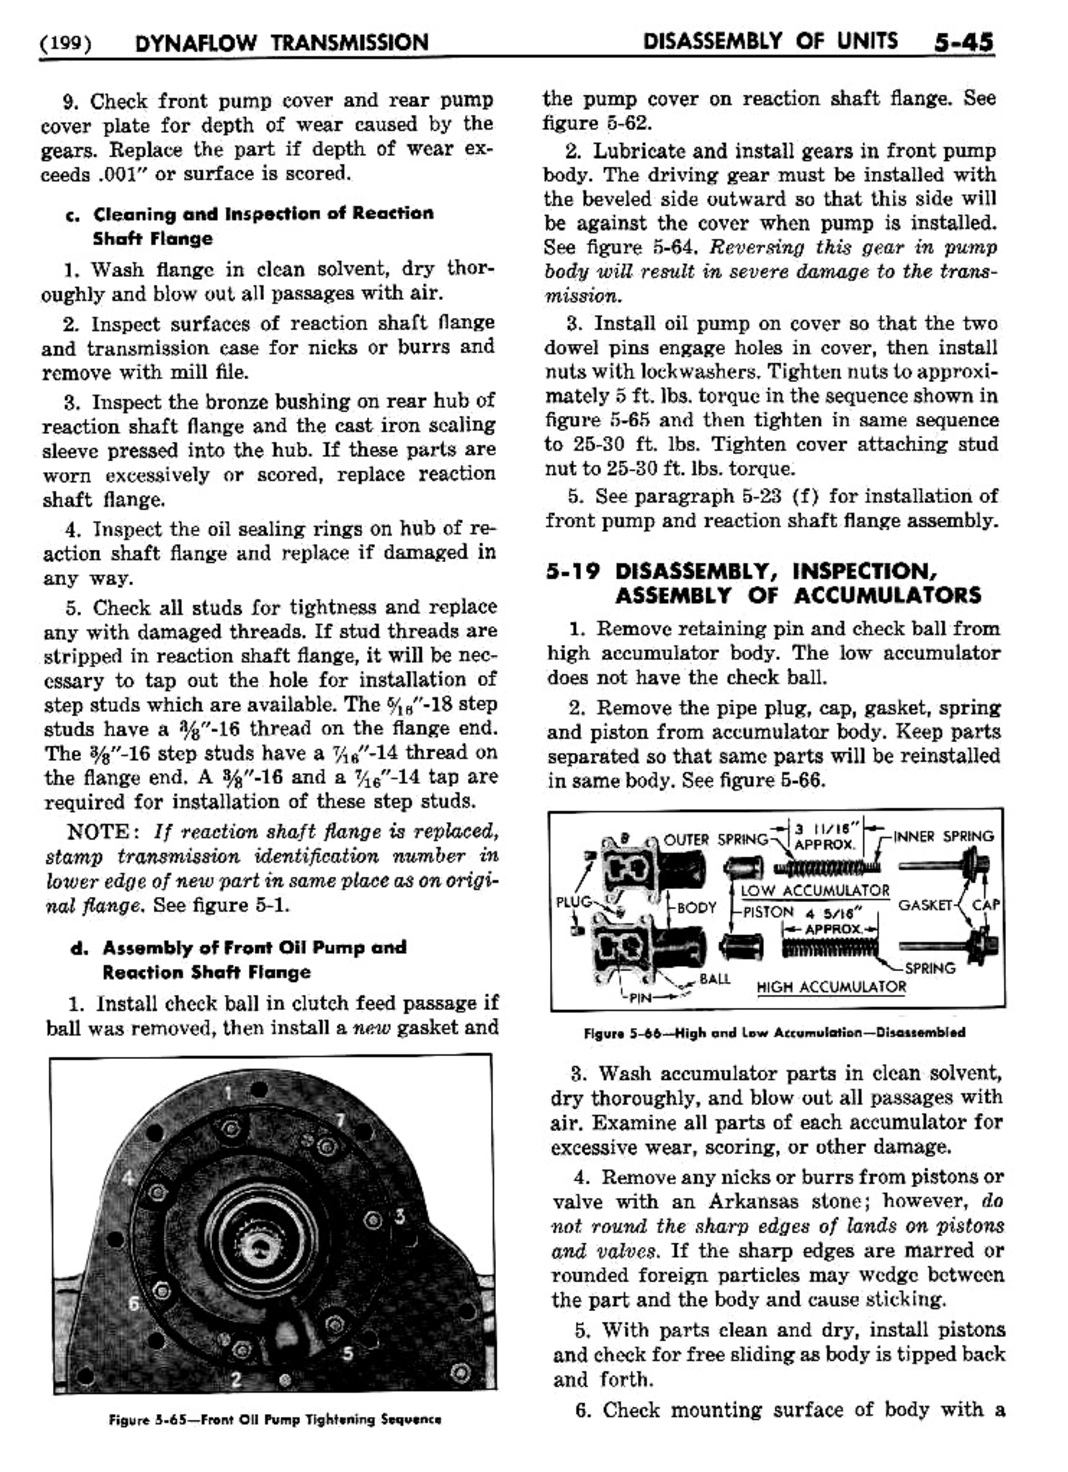 n_06 1954 Buick Shop Manual - Dynaflow-045-045.jpg